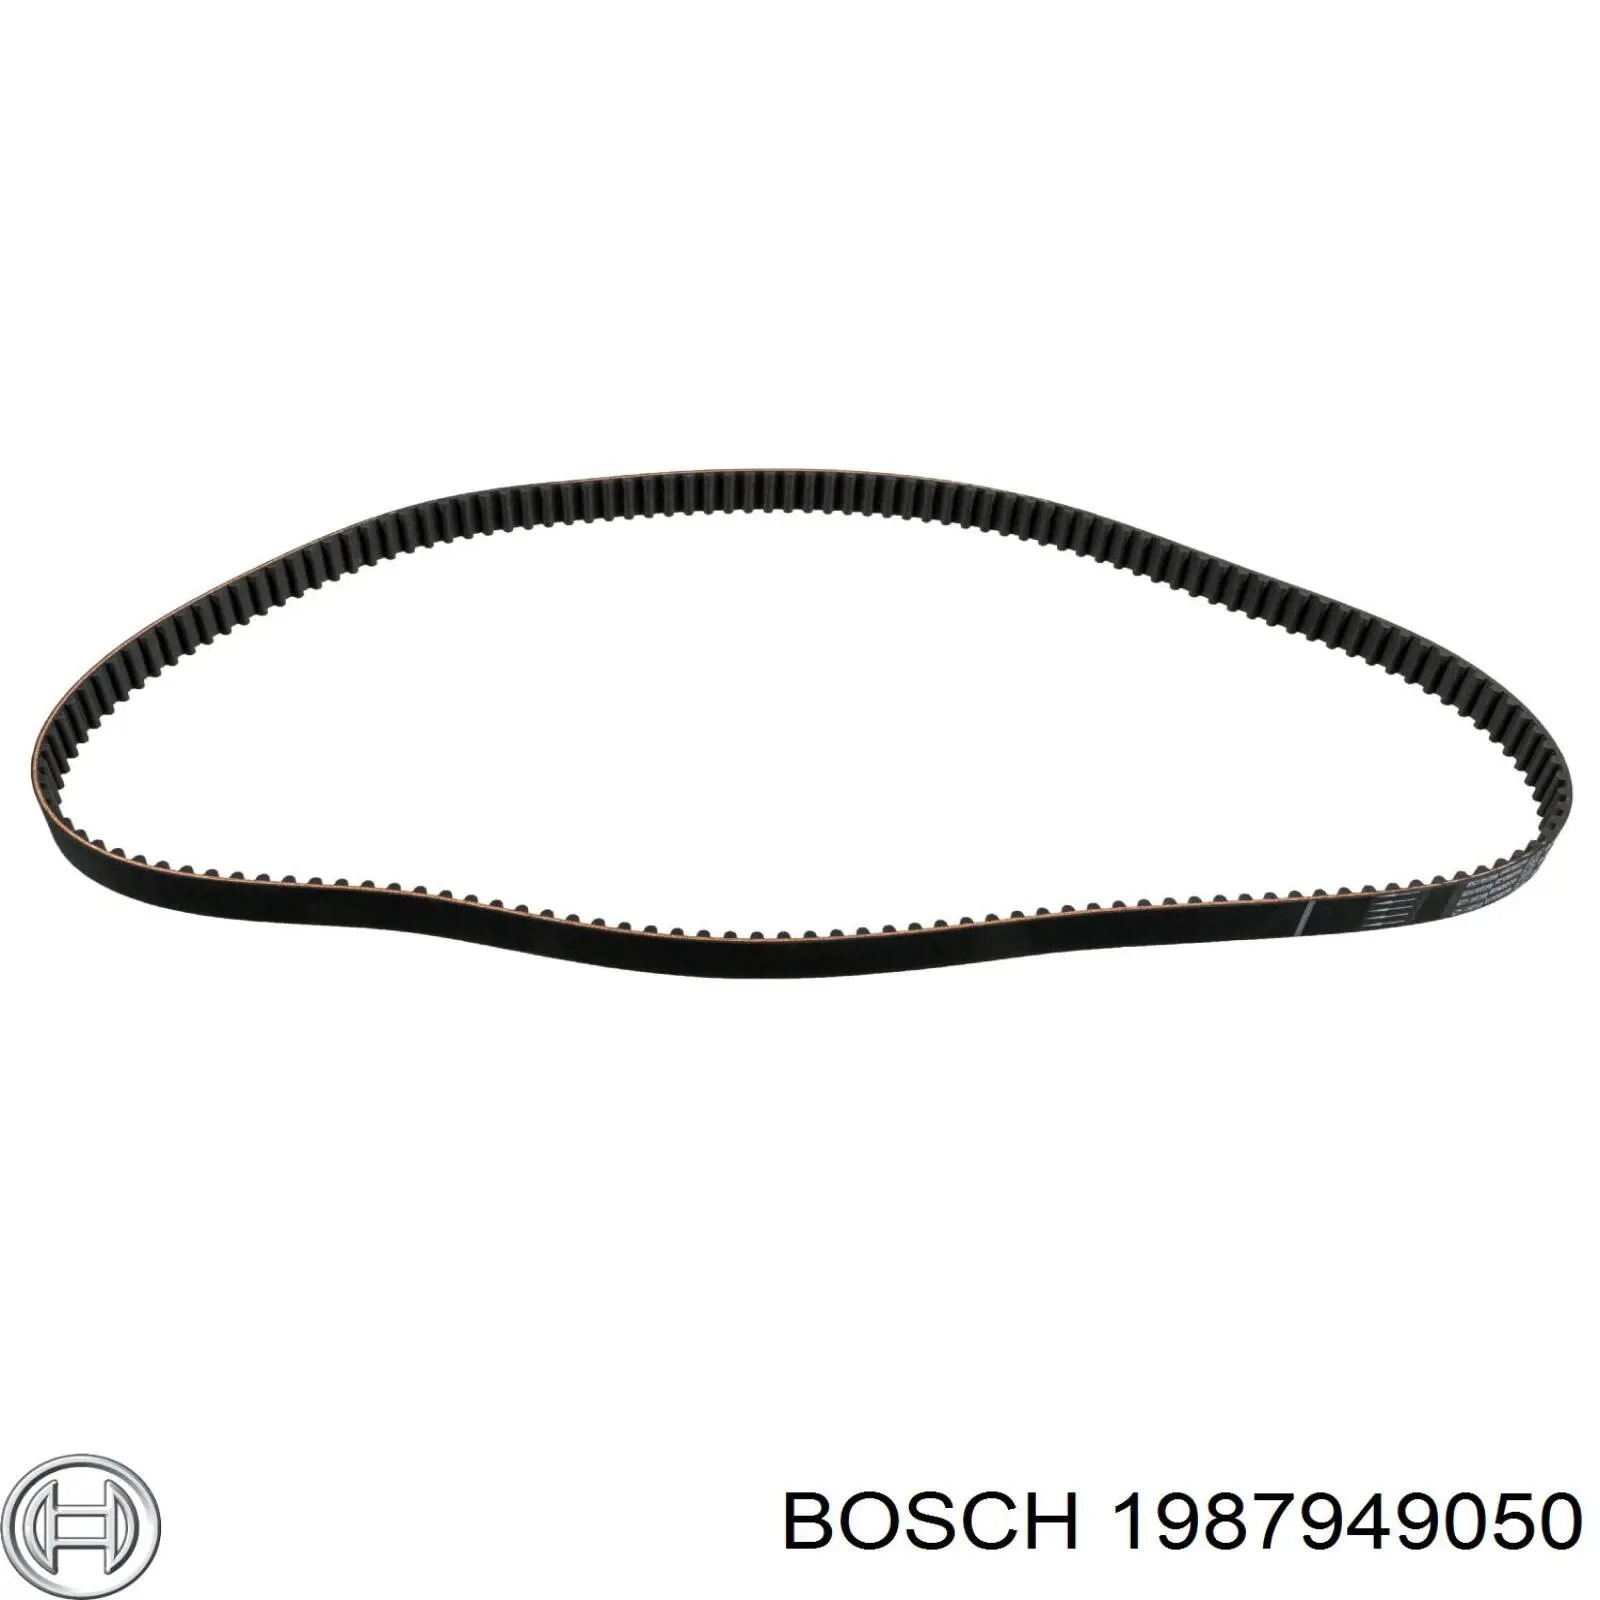 1987949050 Bosch correa distribucion